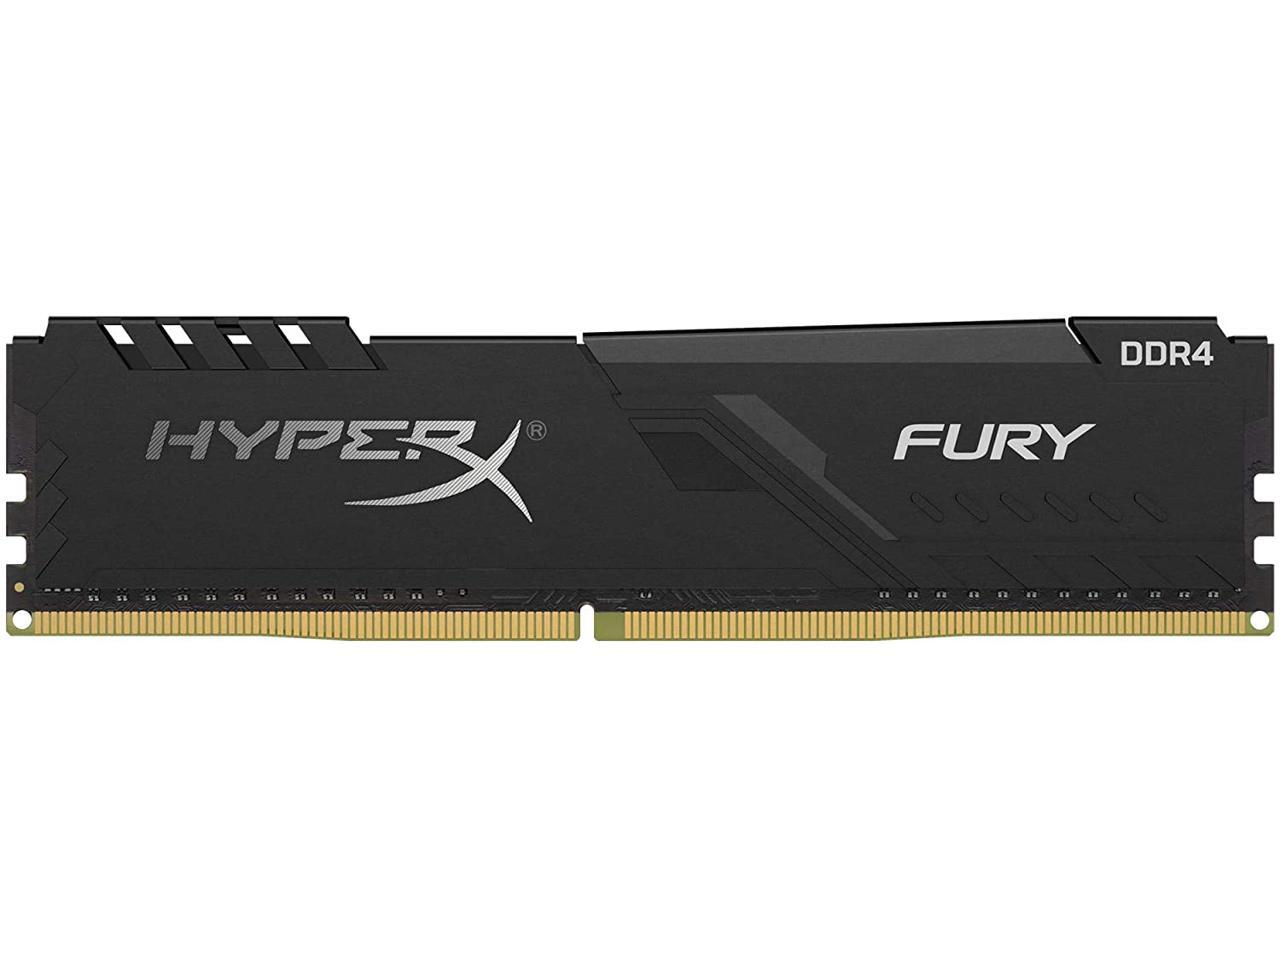 Fury Hyperx 8GB